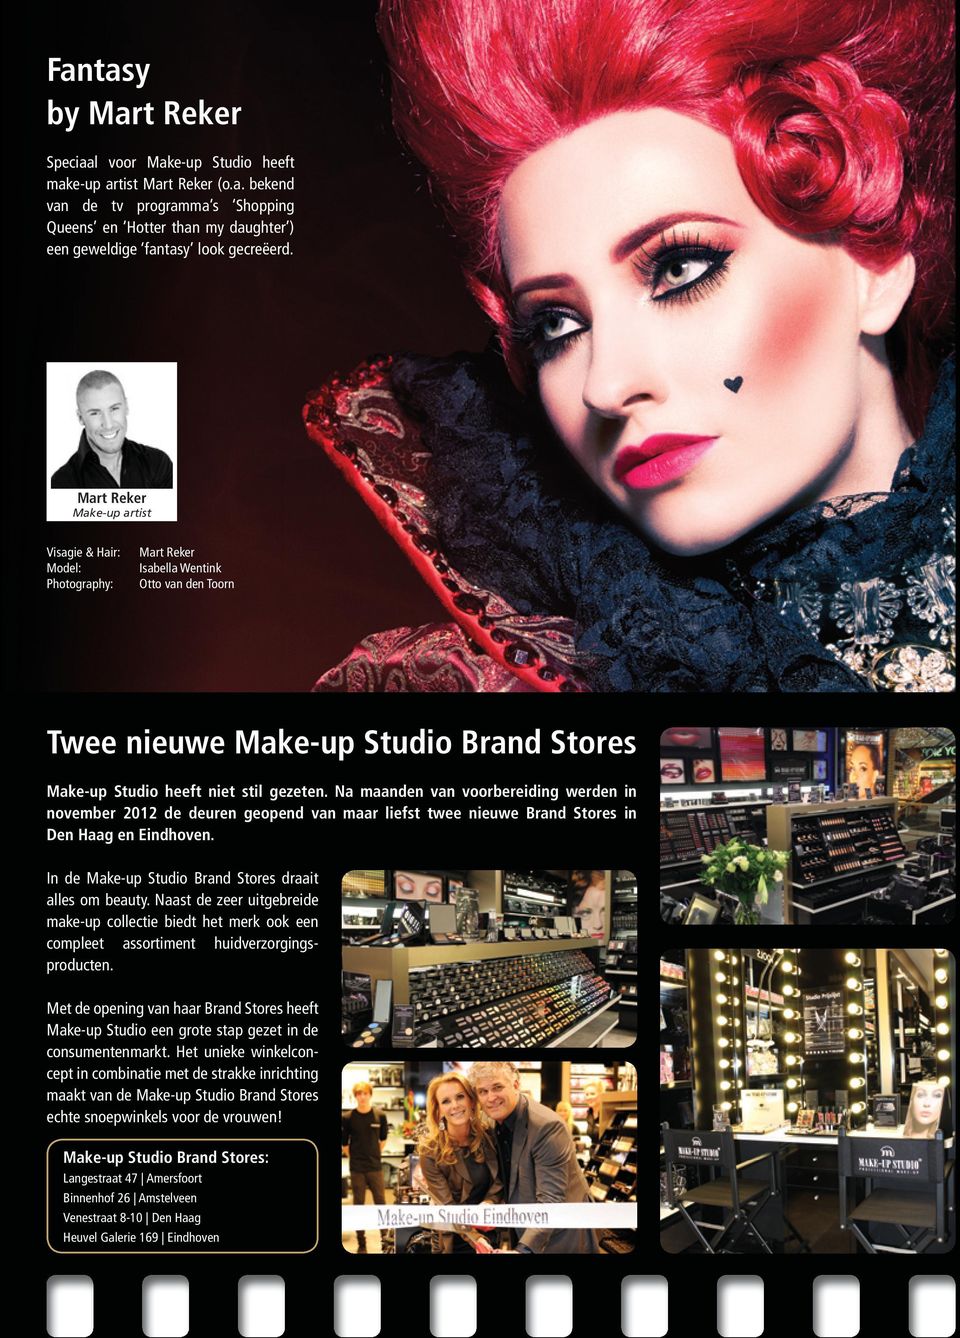 Na maanden van voorbereiding werden in november 2012 de deuren geopend van maar liefst twee nieuwe Brand Stores in Den Haag en Eindhoven. In de Make-up Studio Brand Stores draait alles om beauty.